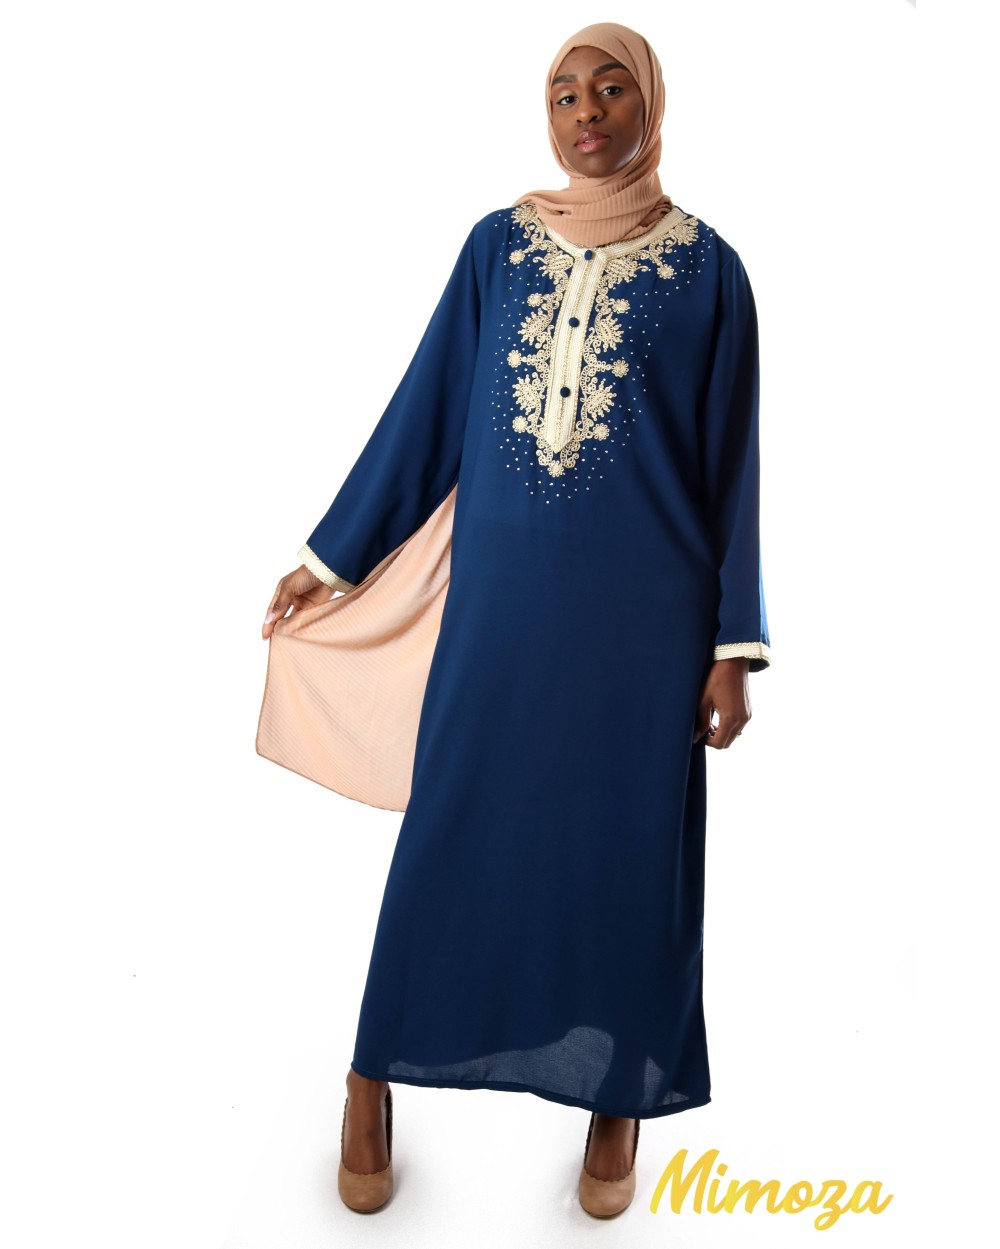 royal blue abaya